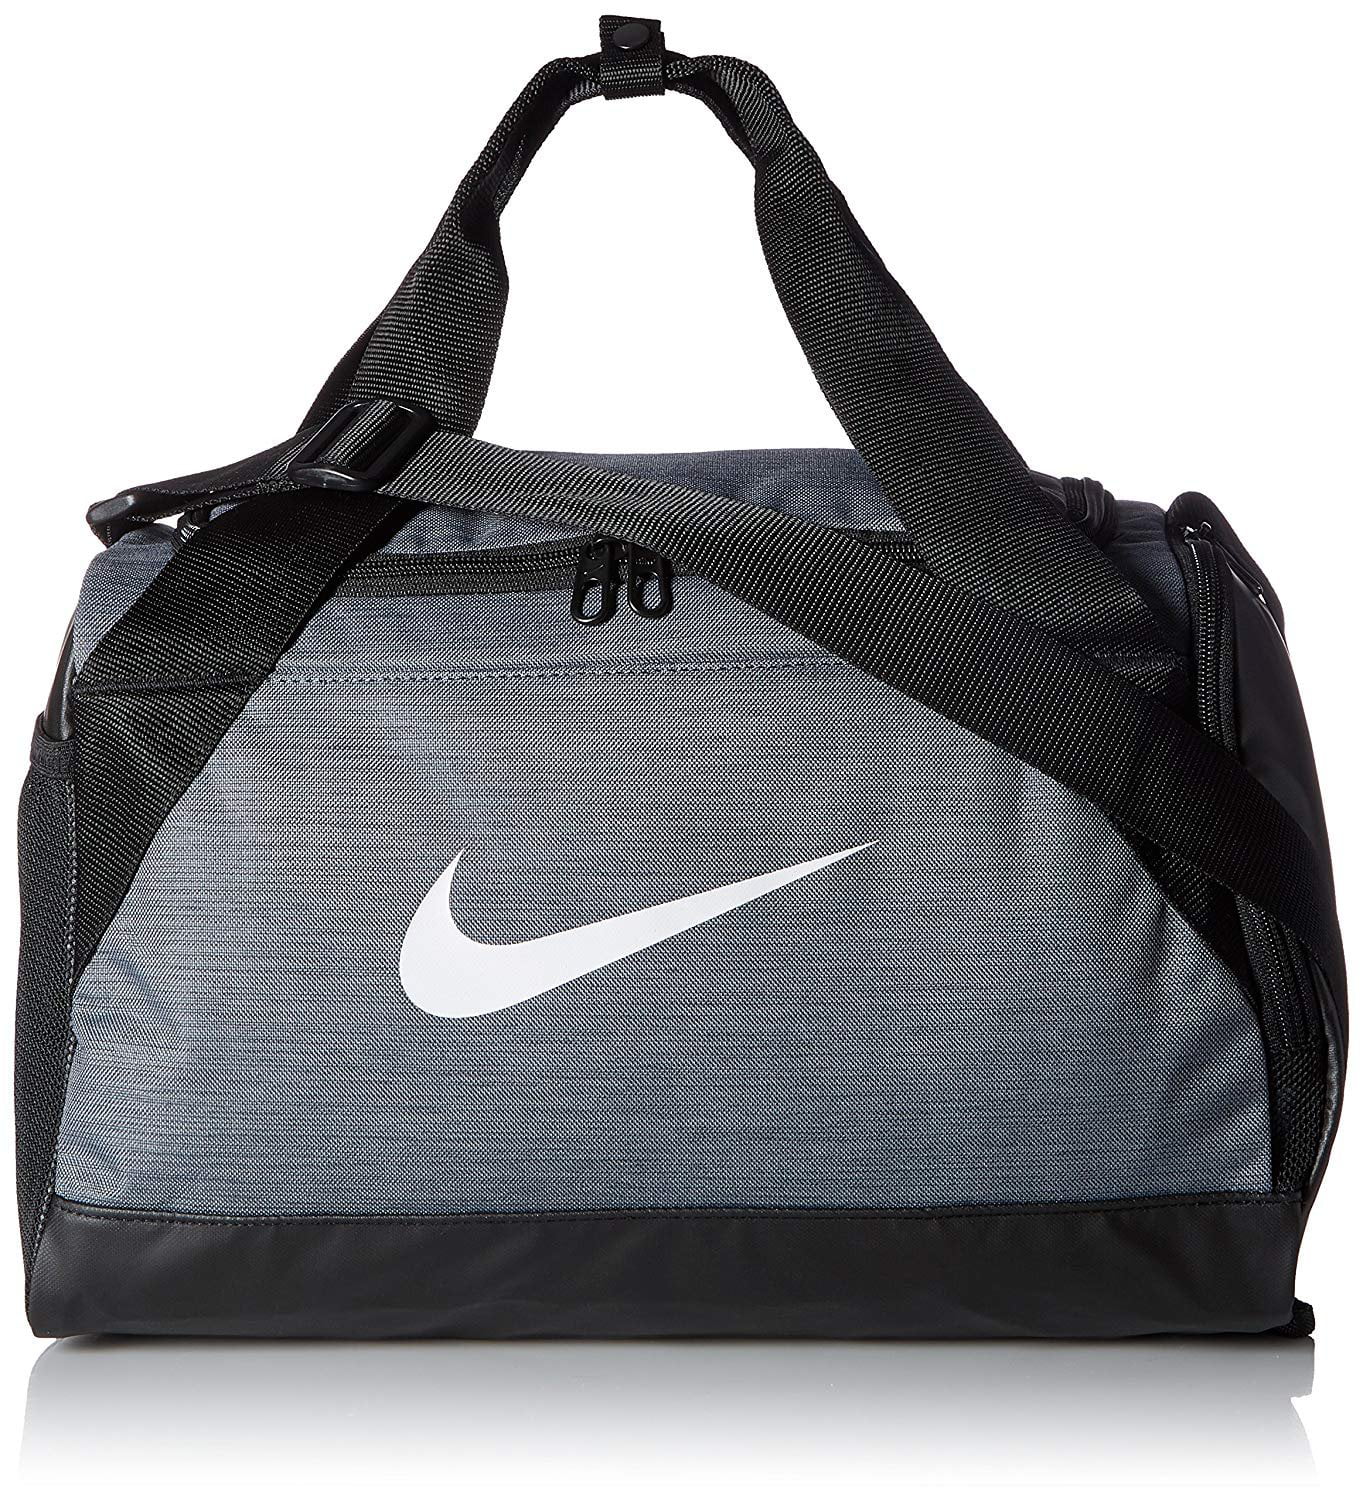 verkiezing moed Hol Nike Brasilia (Extra-Small) Duffel Bag NKBA5432 - Walmart.com